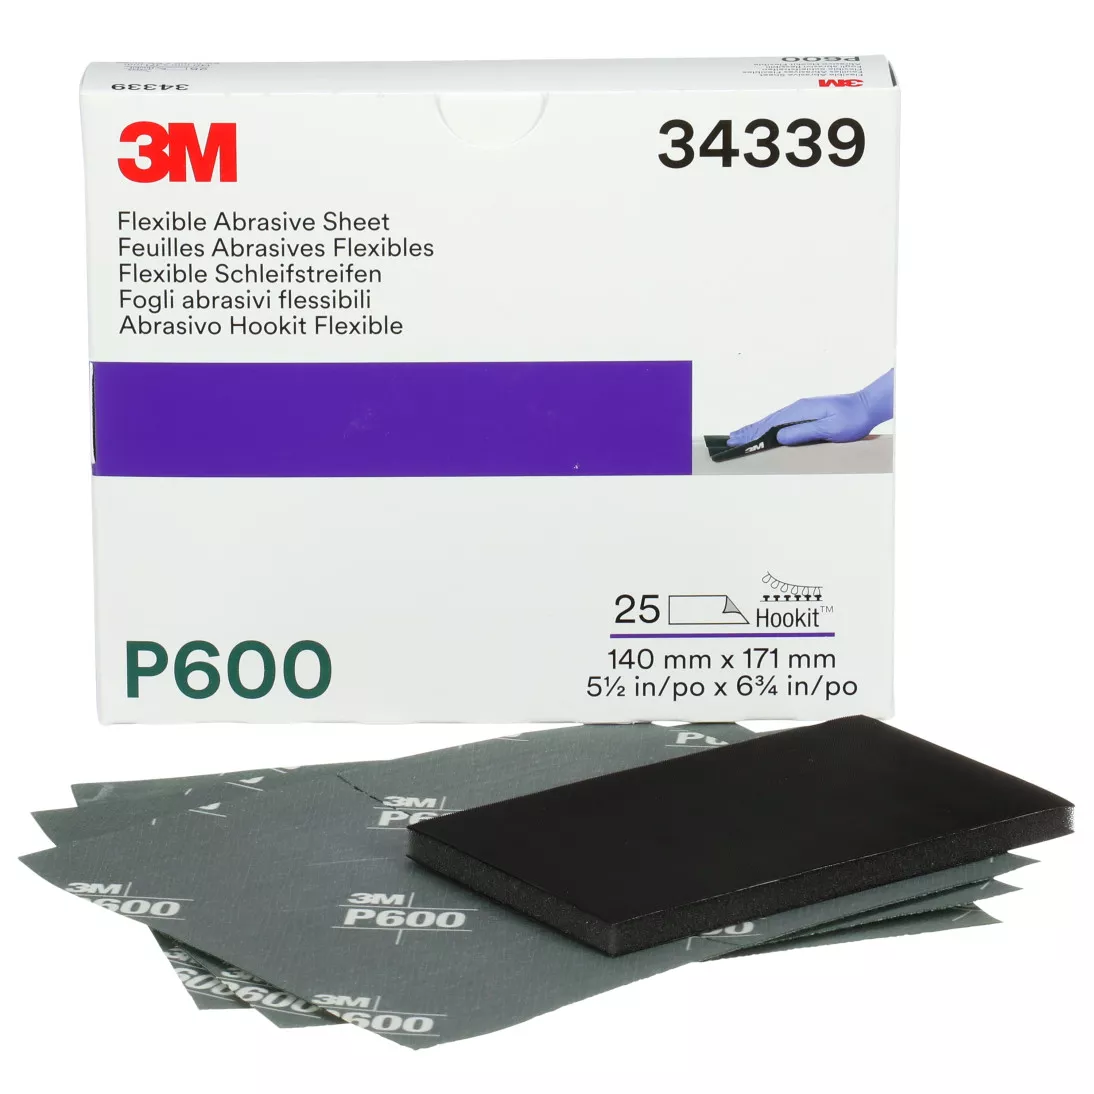 3M™ Hookit™ Flexible Abrasive Sheet, 34339, P600, 5.5 in x 6.8 in, 25
sheets per carton, 5 cartons per case